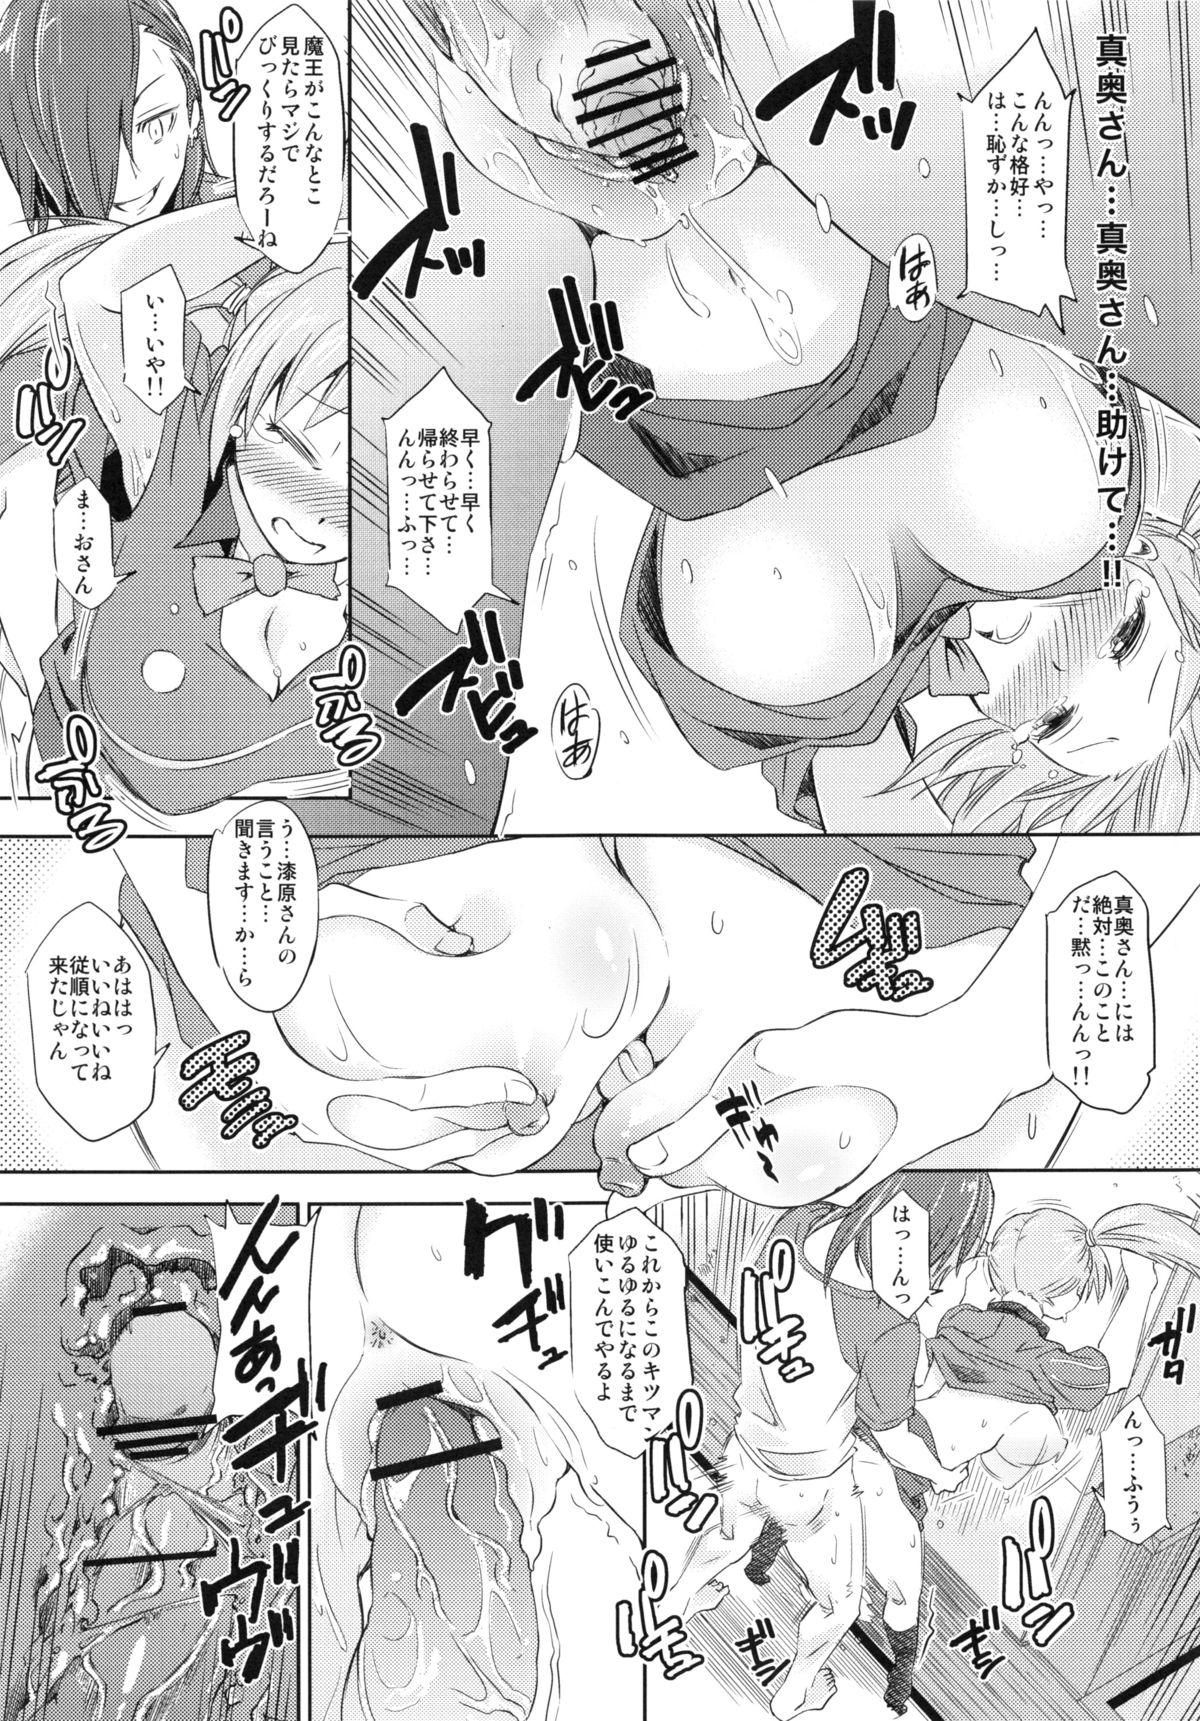 Pussysex (C84) [SMUGGLER (Kazuwo Daisuke)] Chii-chan, Urushihara no Seishori-gakari ni naru (Hataraku Maou-sama!) - Hataraku maou-sama Guyonshemale - Page 10